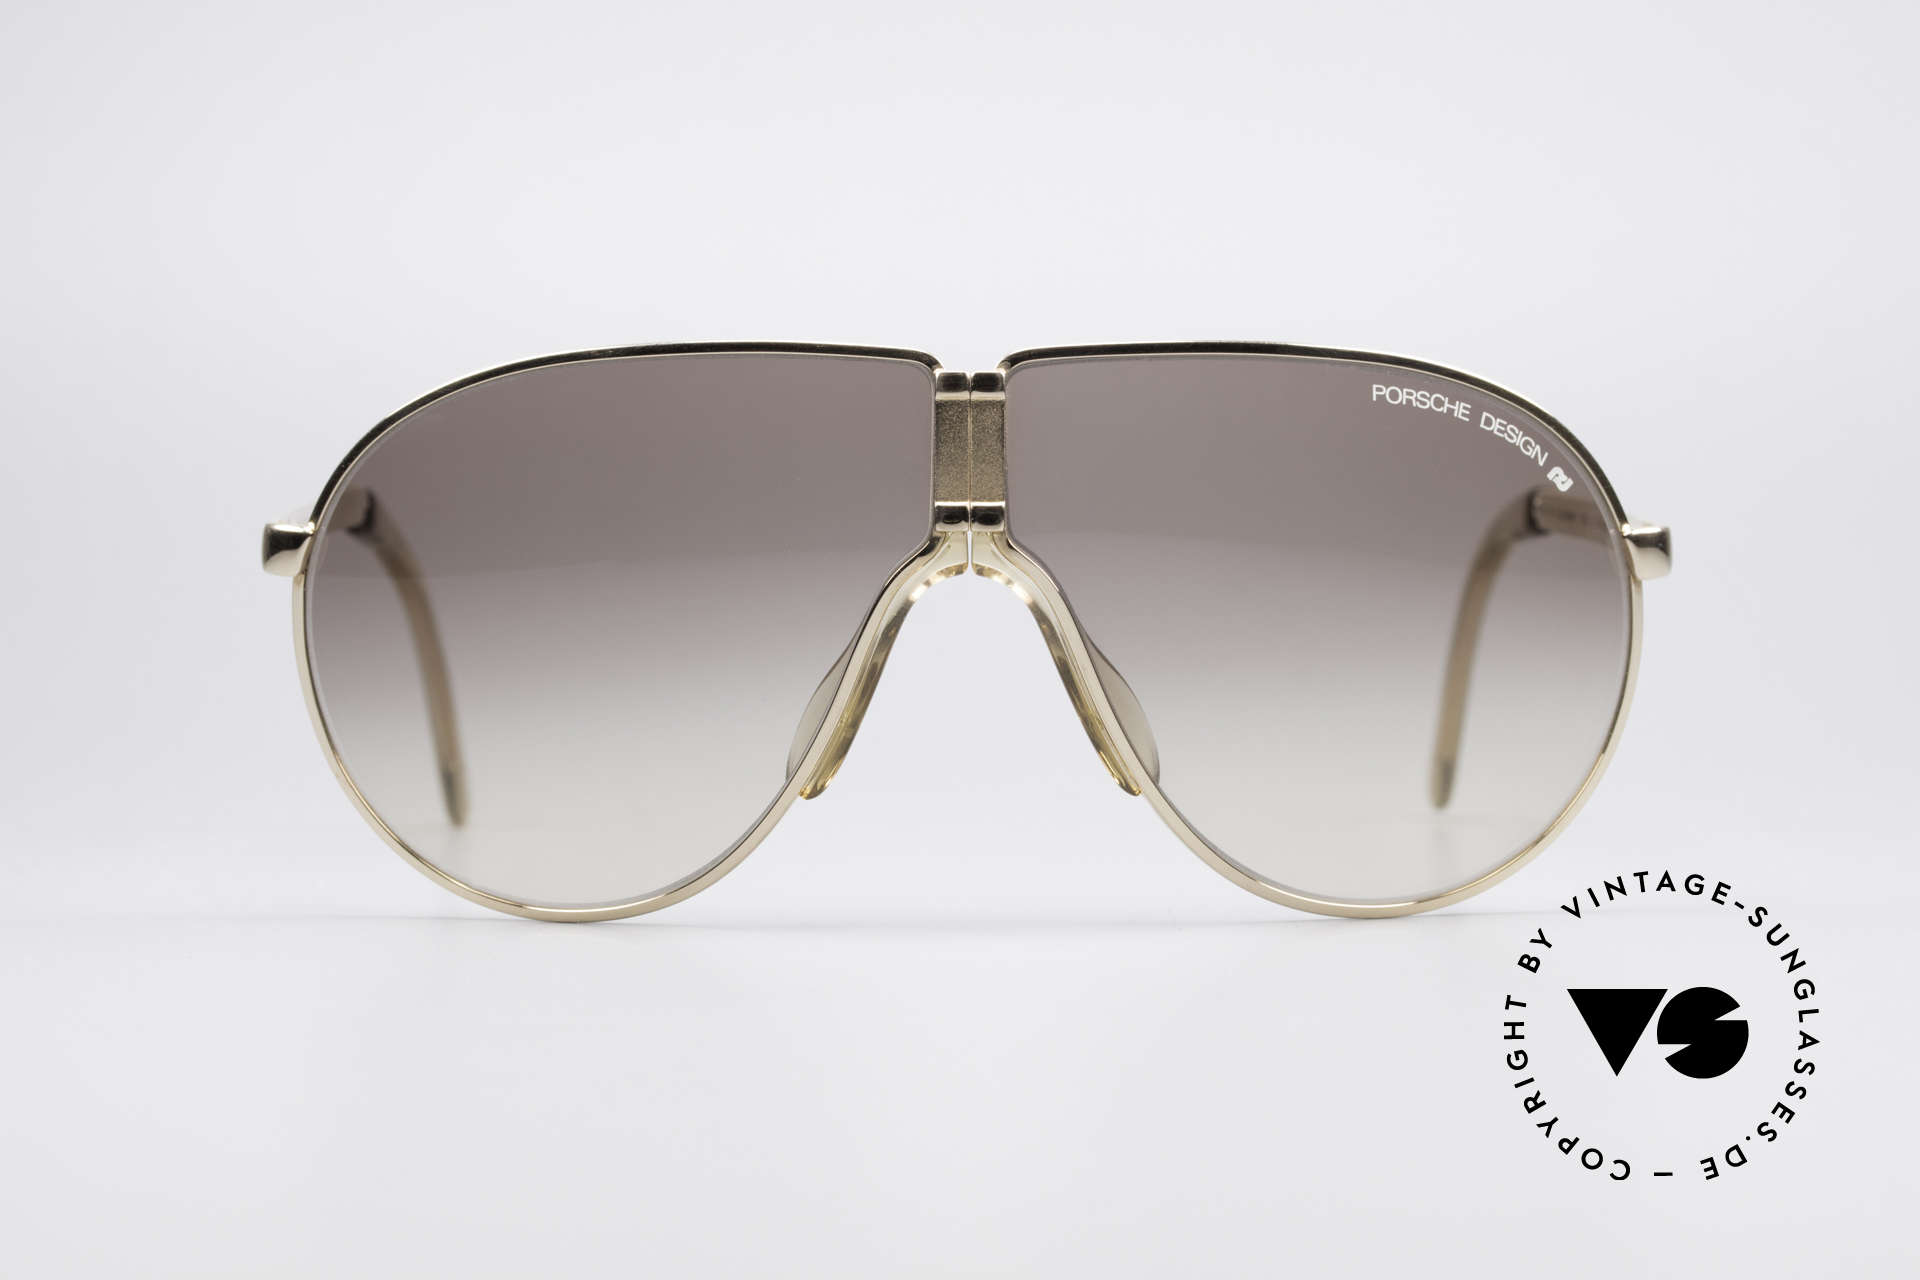 Carrera Porsche Design 5622 90 Folding Sunglasses | ubicaciondepersonas ...